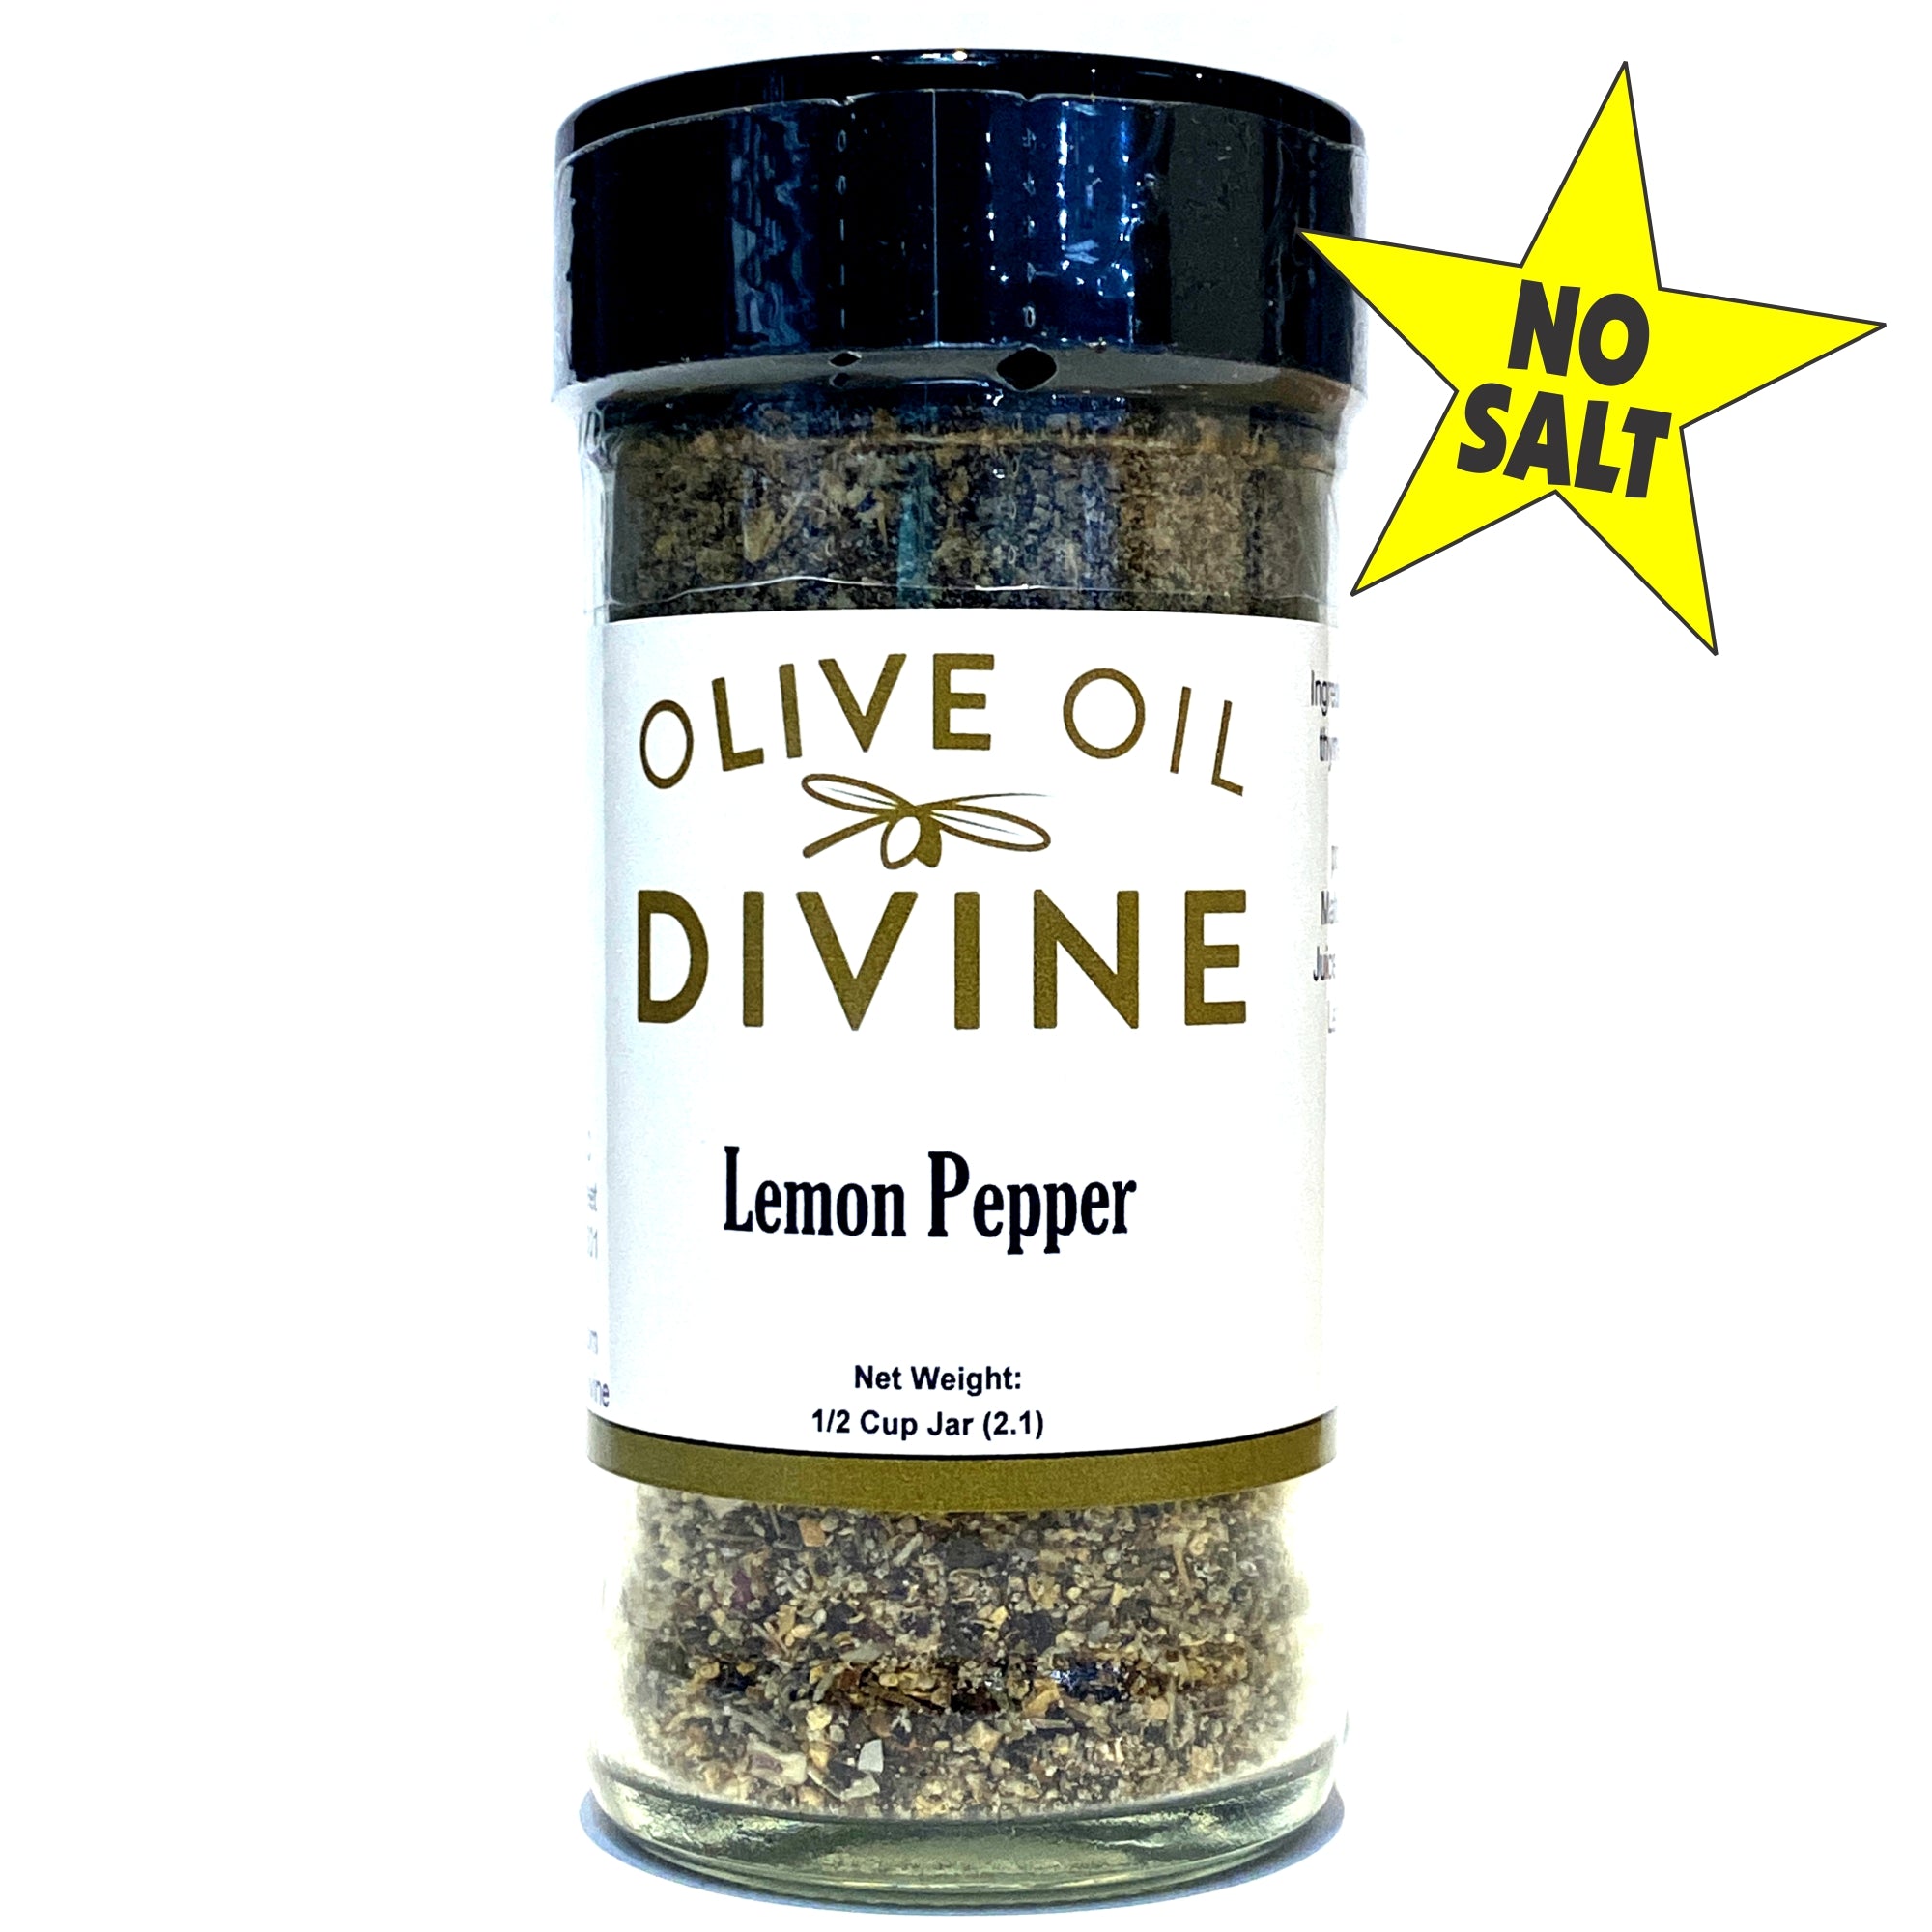 Buy Lemon Pepper Online - Free Shipping Available!